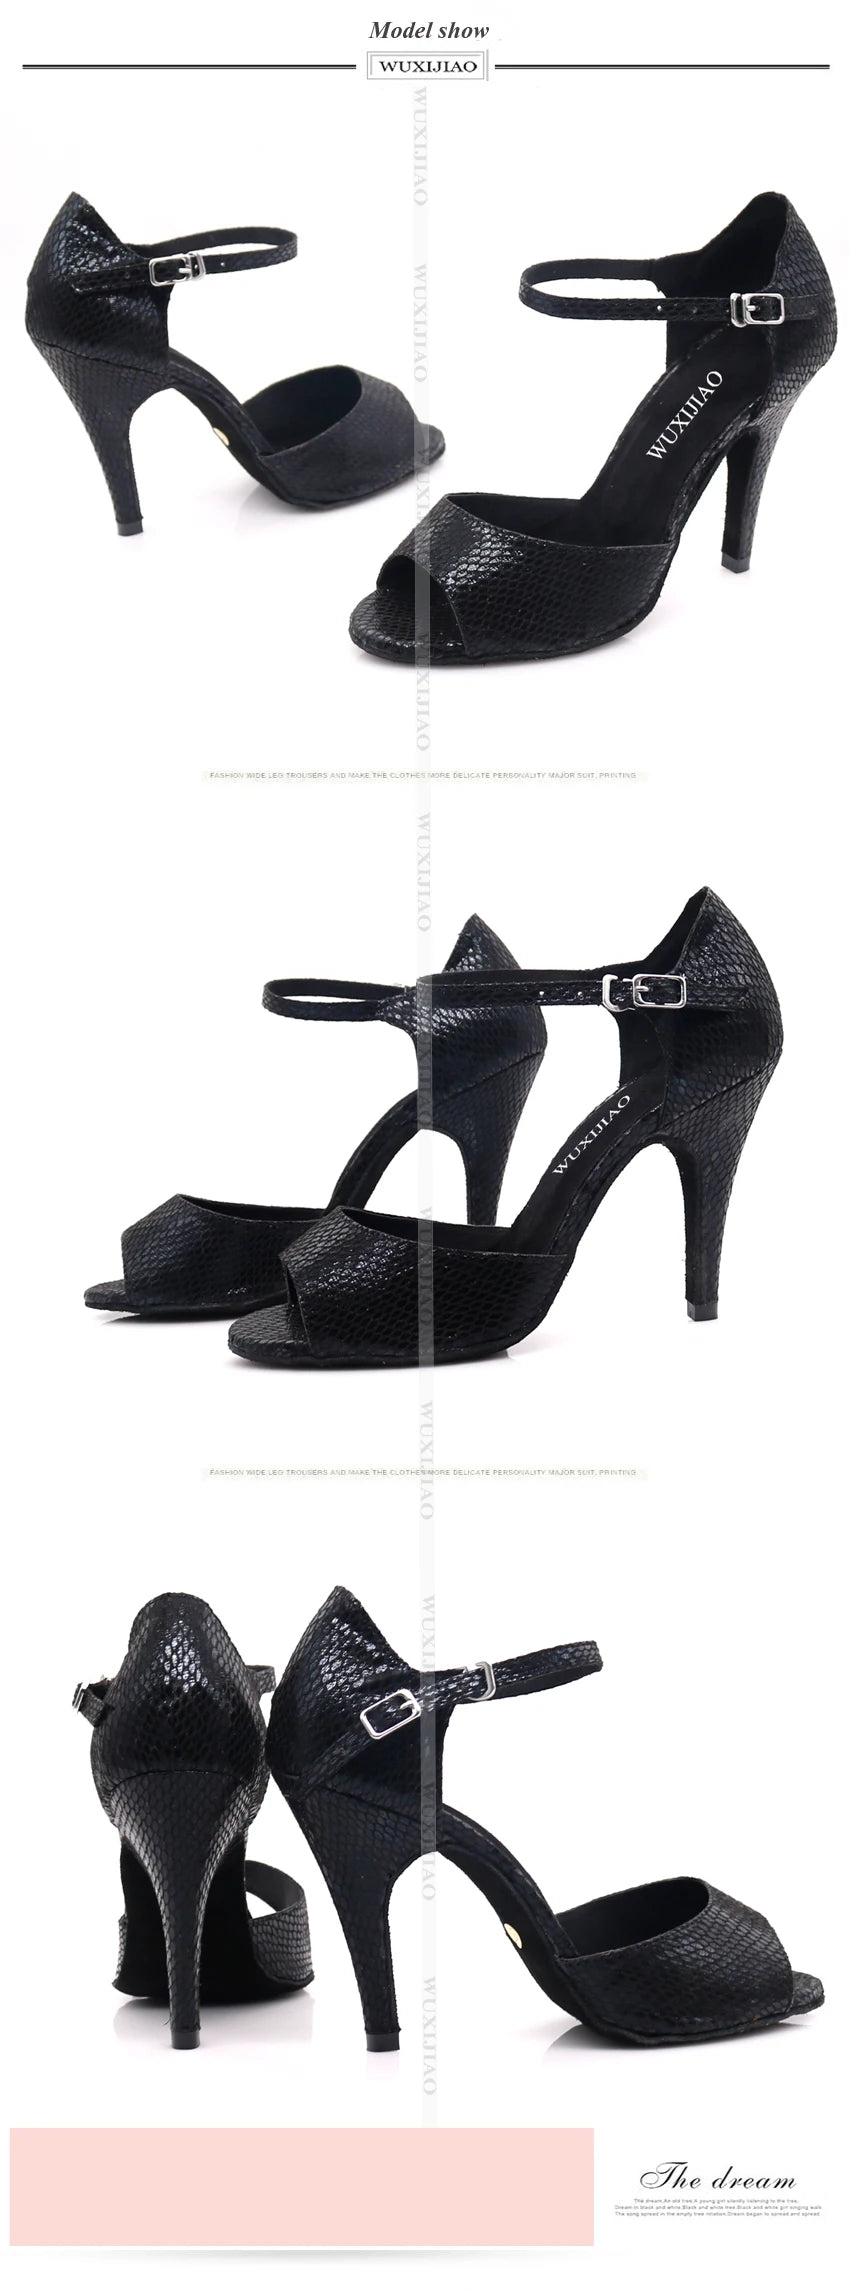 Chaussures de danse coloris noir - Talons de 6 à 10cm